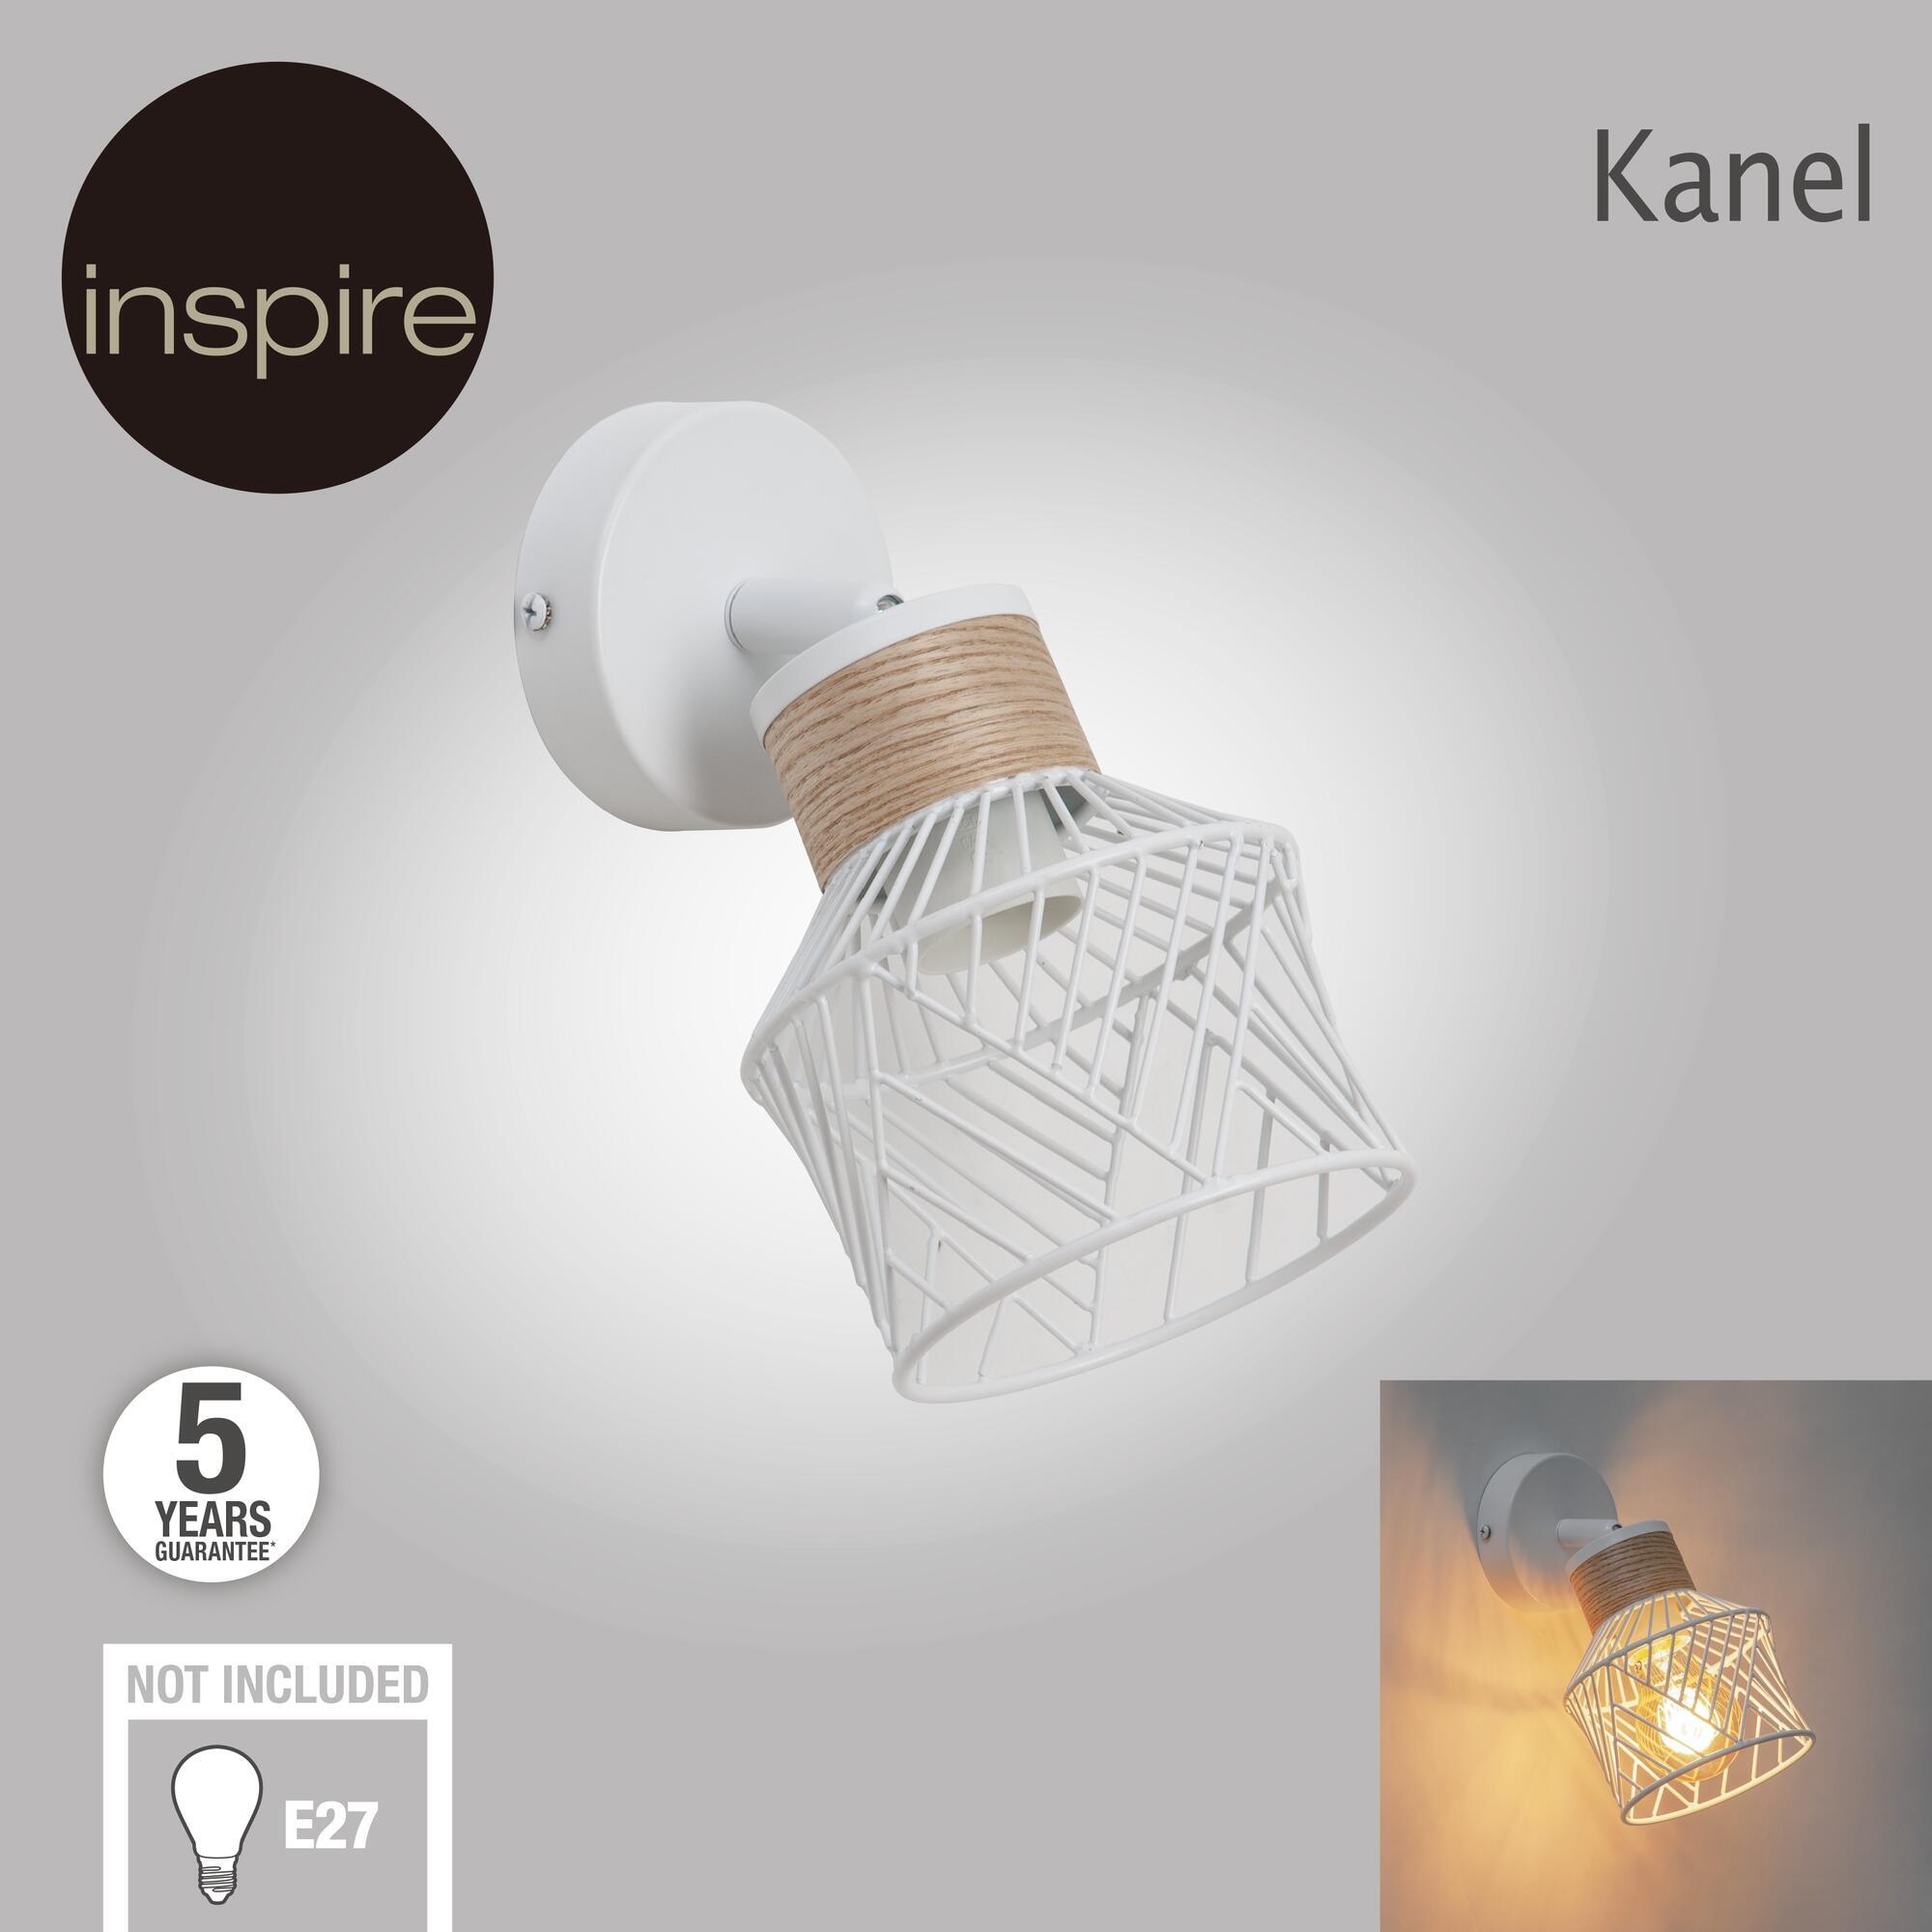 Faretto Kanel bianco in metallo E27 INSPIRE - 14